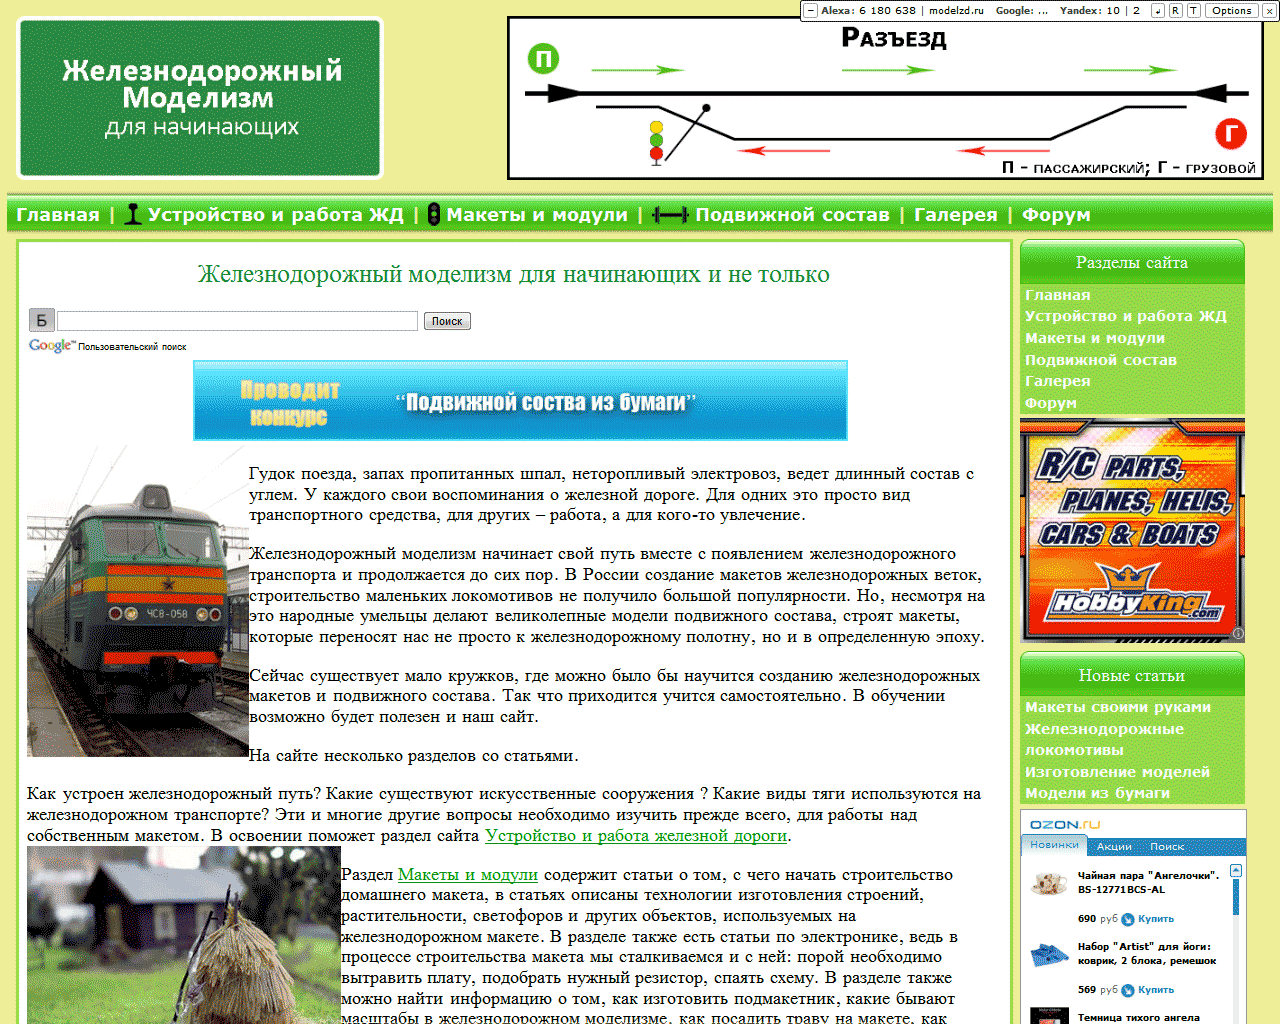 Сайт - Железнодорожный моделизм предыдущая версия